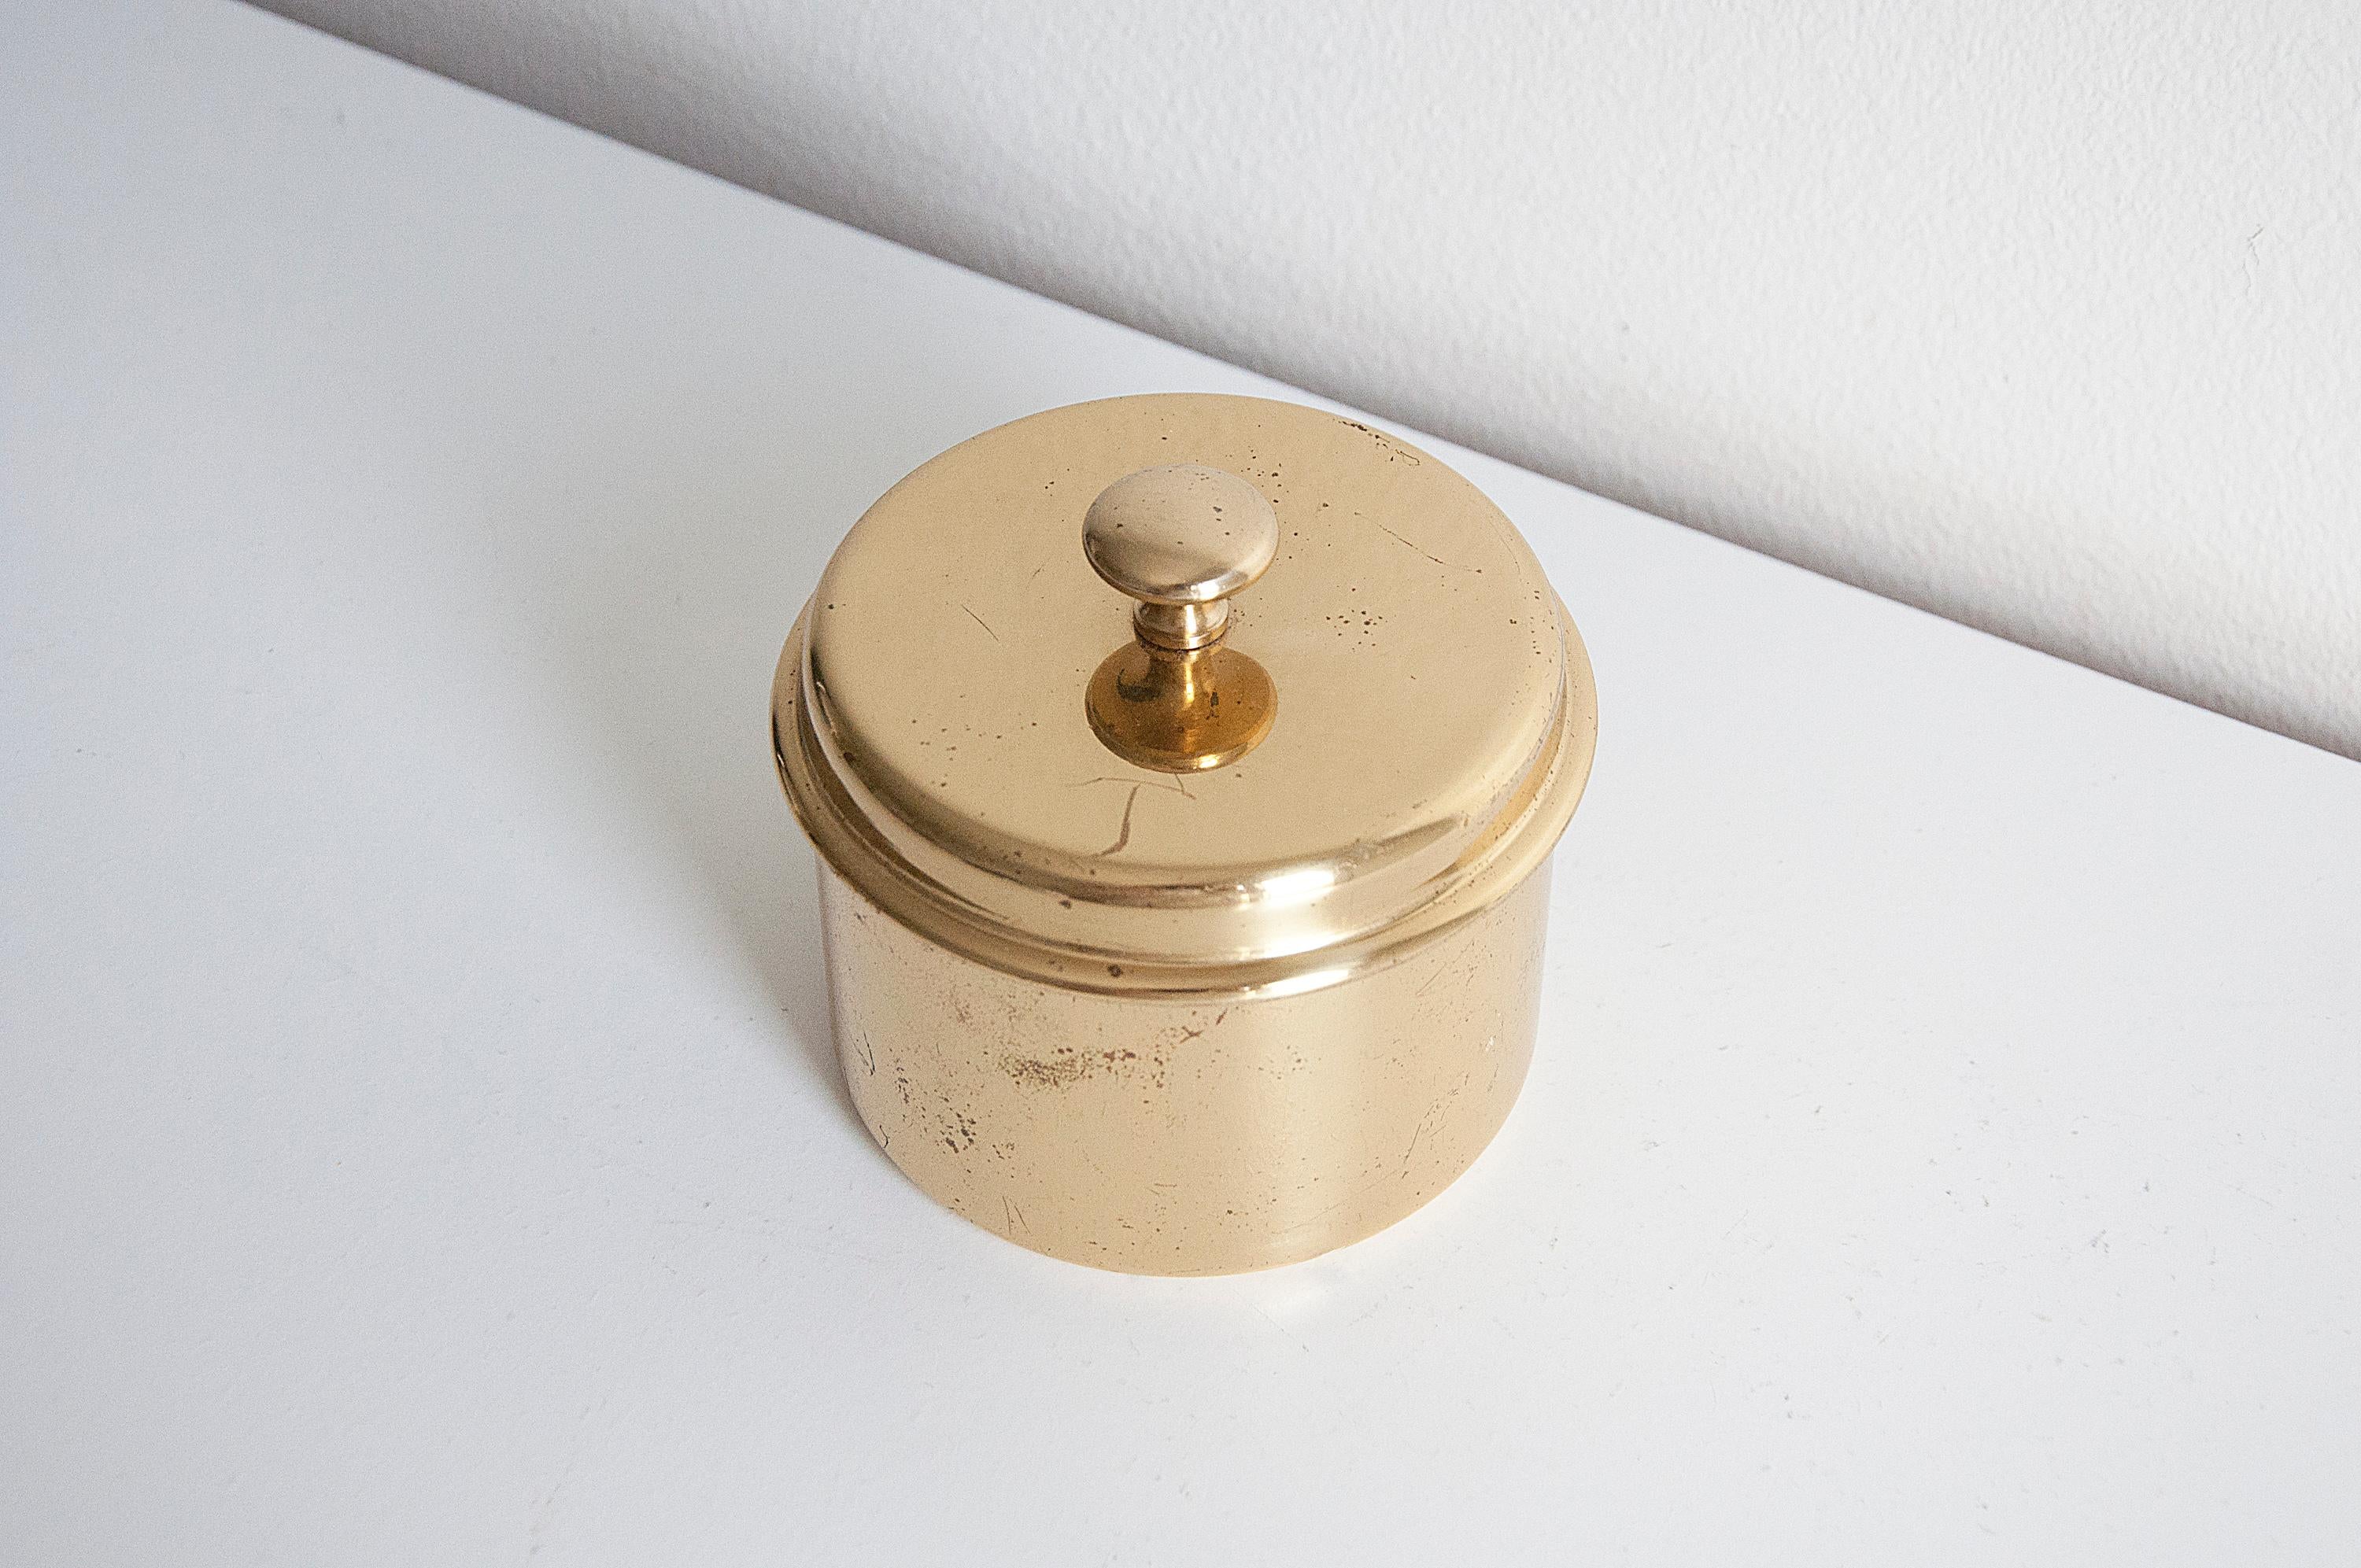 Brass Jar Model P 42 by Hans-Agne Jakobsson, 1960s.
Produced by Hans-Agne Jakobsson AB in Markaryd, Sweden.